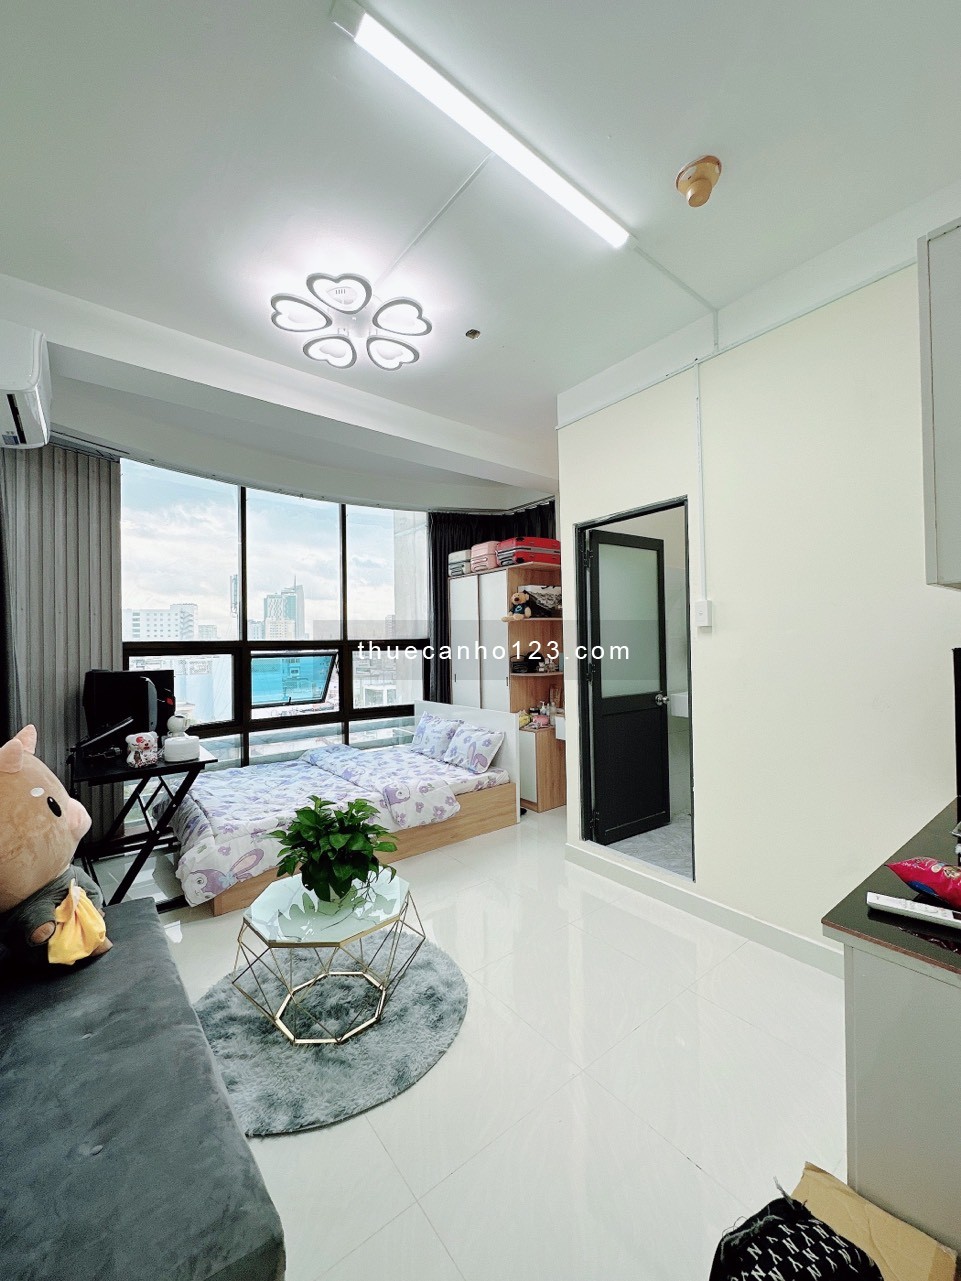 Căn hộ studio full nội thất cửa sổ, ngay ngã tư Hàng Xanh, Thuận tiện liên thông quận 1,3 Pnhuan…